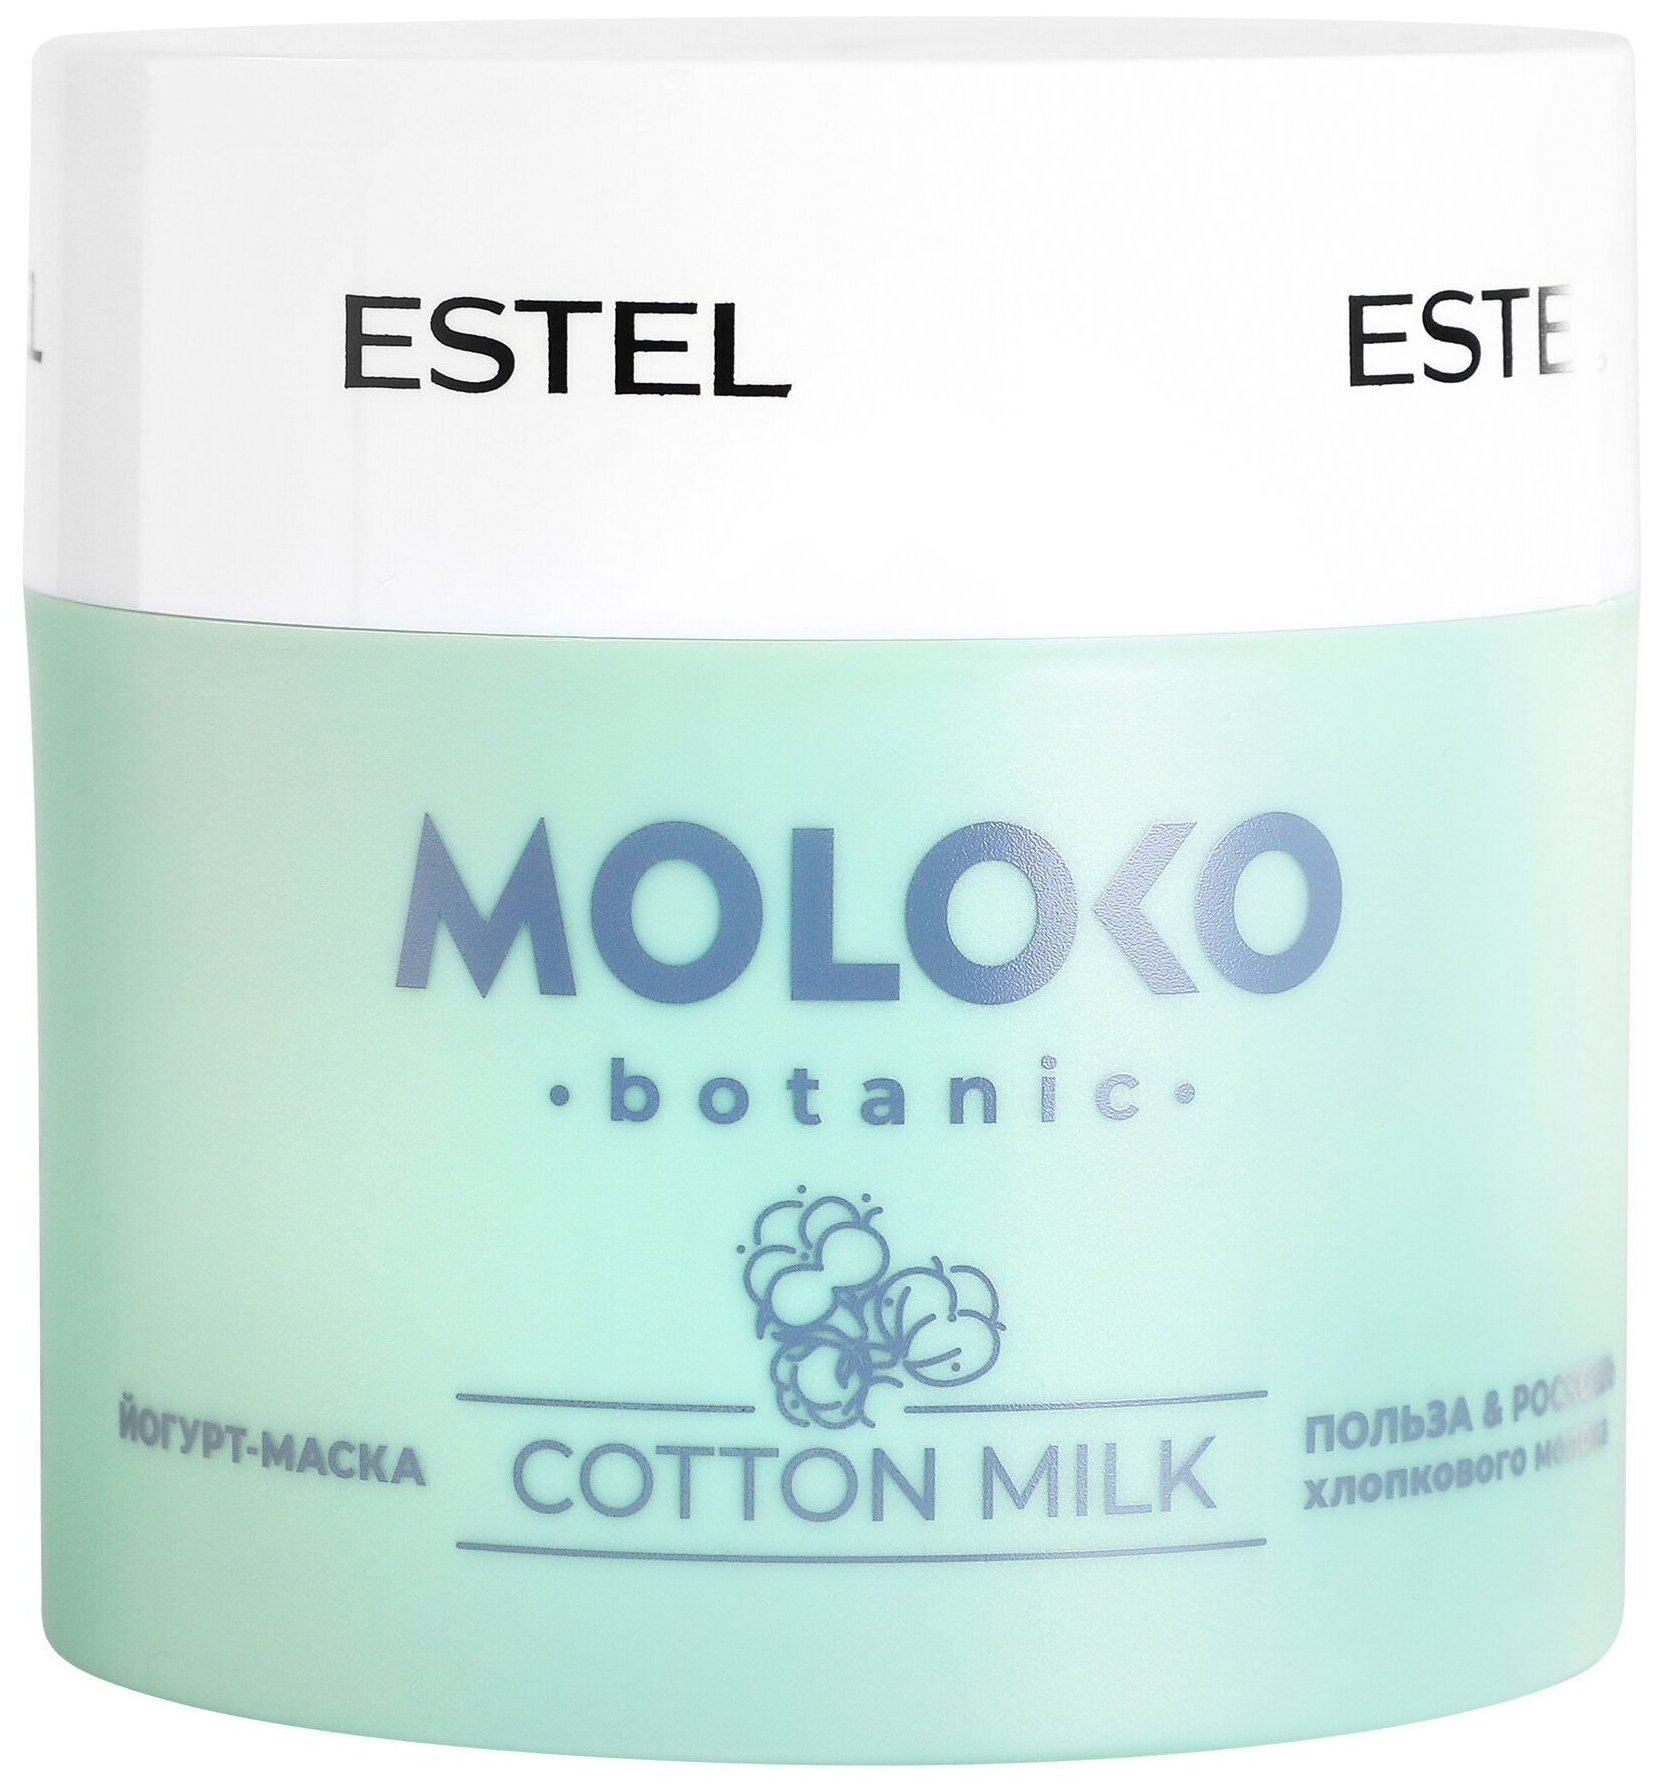 Маска MOLOKO BOTANIC для ухода за волосами ESTEL PROFESSIONAL йогуртовая 300 мл